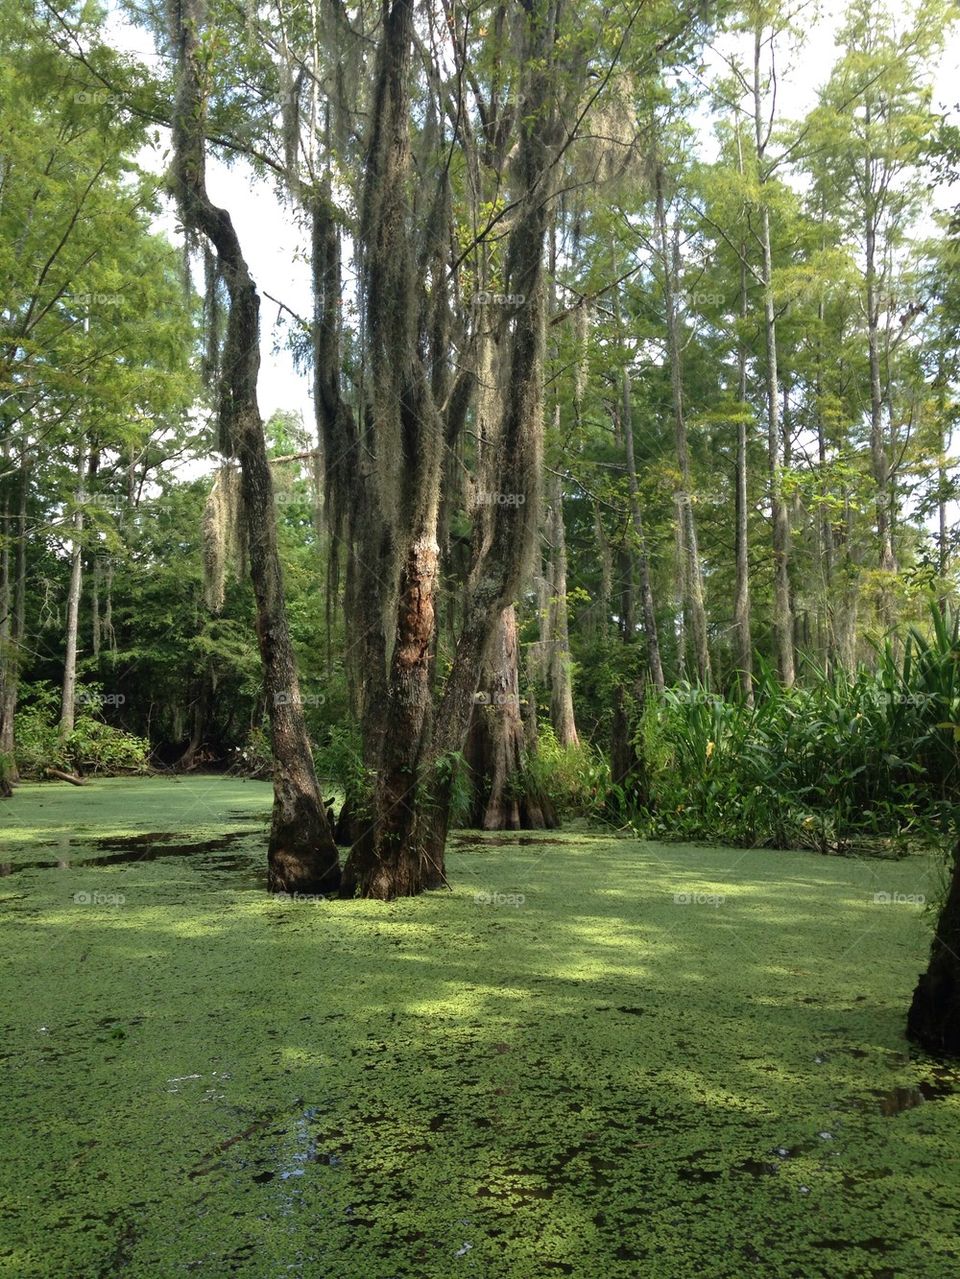 Tour de swamp